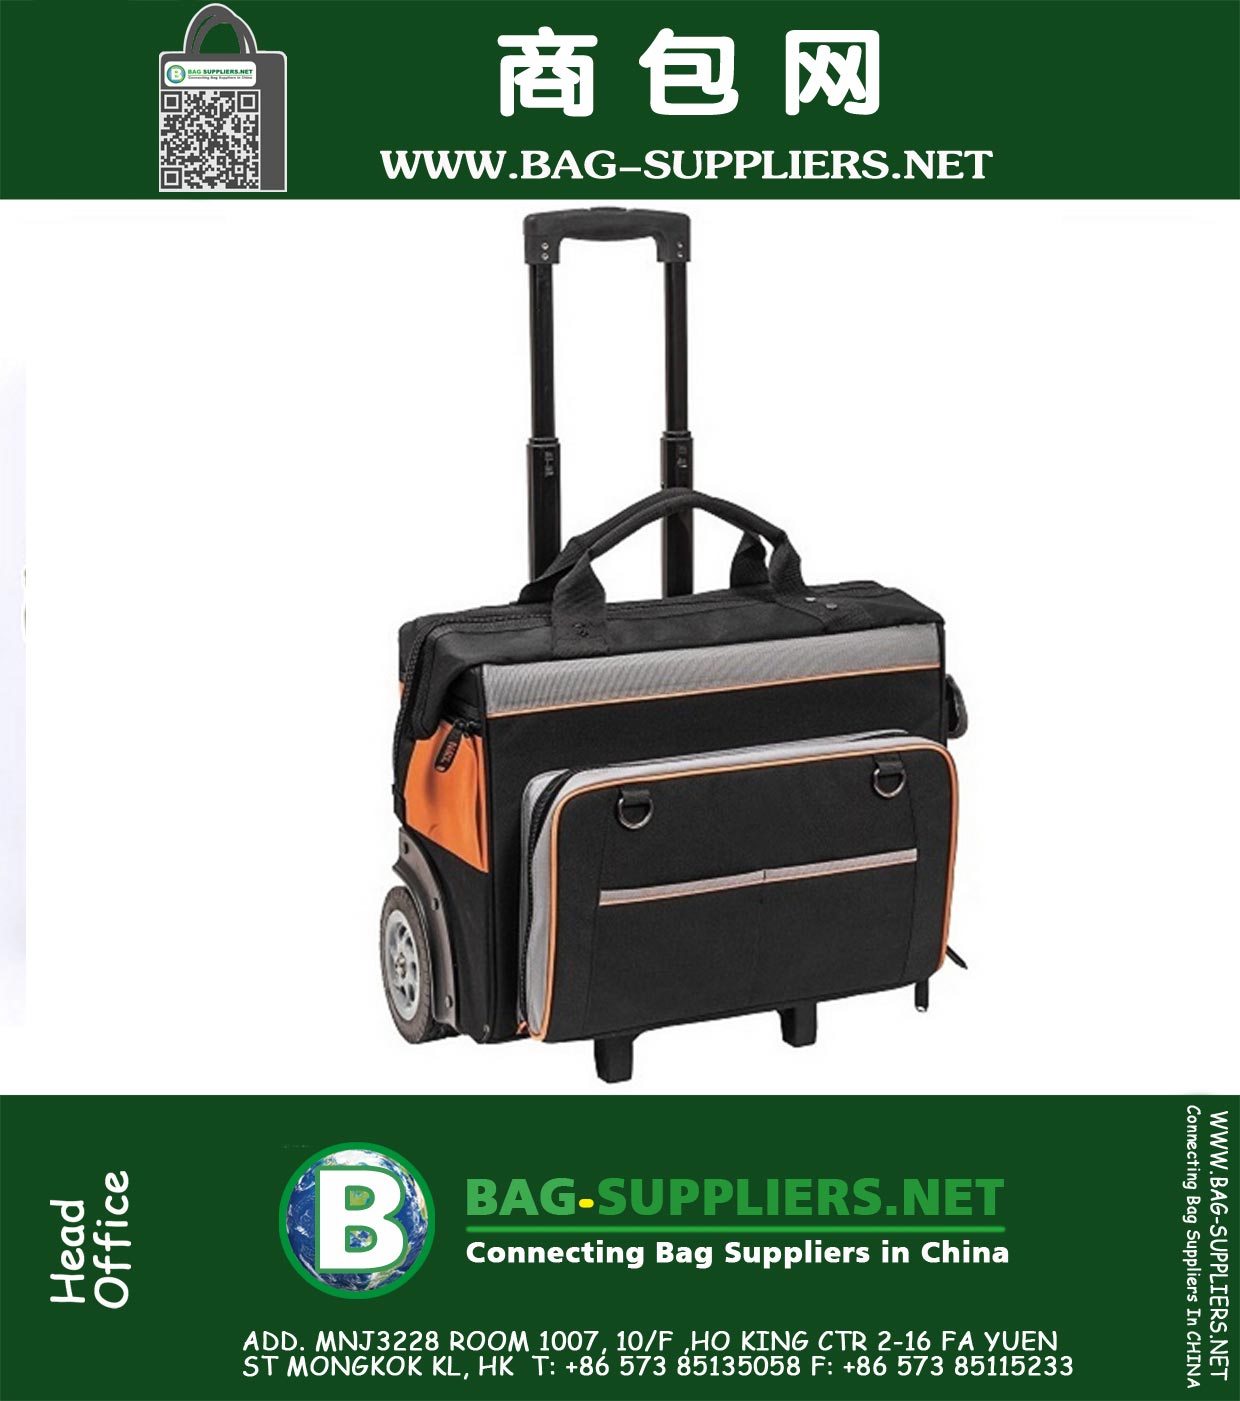 Rolling Bag is een heavy-duty wielen gereedschapstas met ruige 6-inch wielen die gemakkelijk ruw terrein aankan.